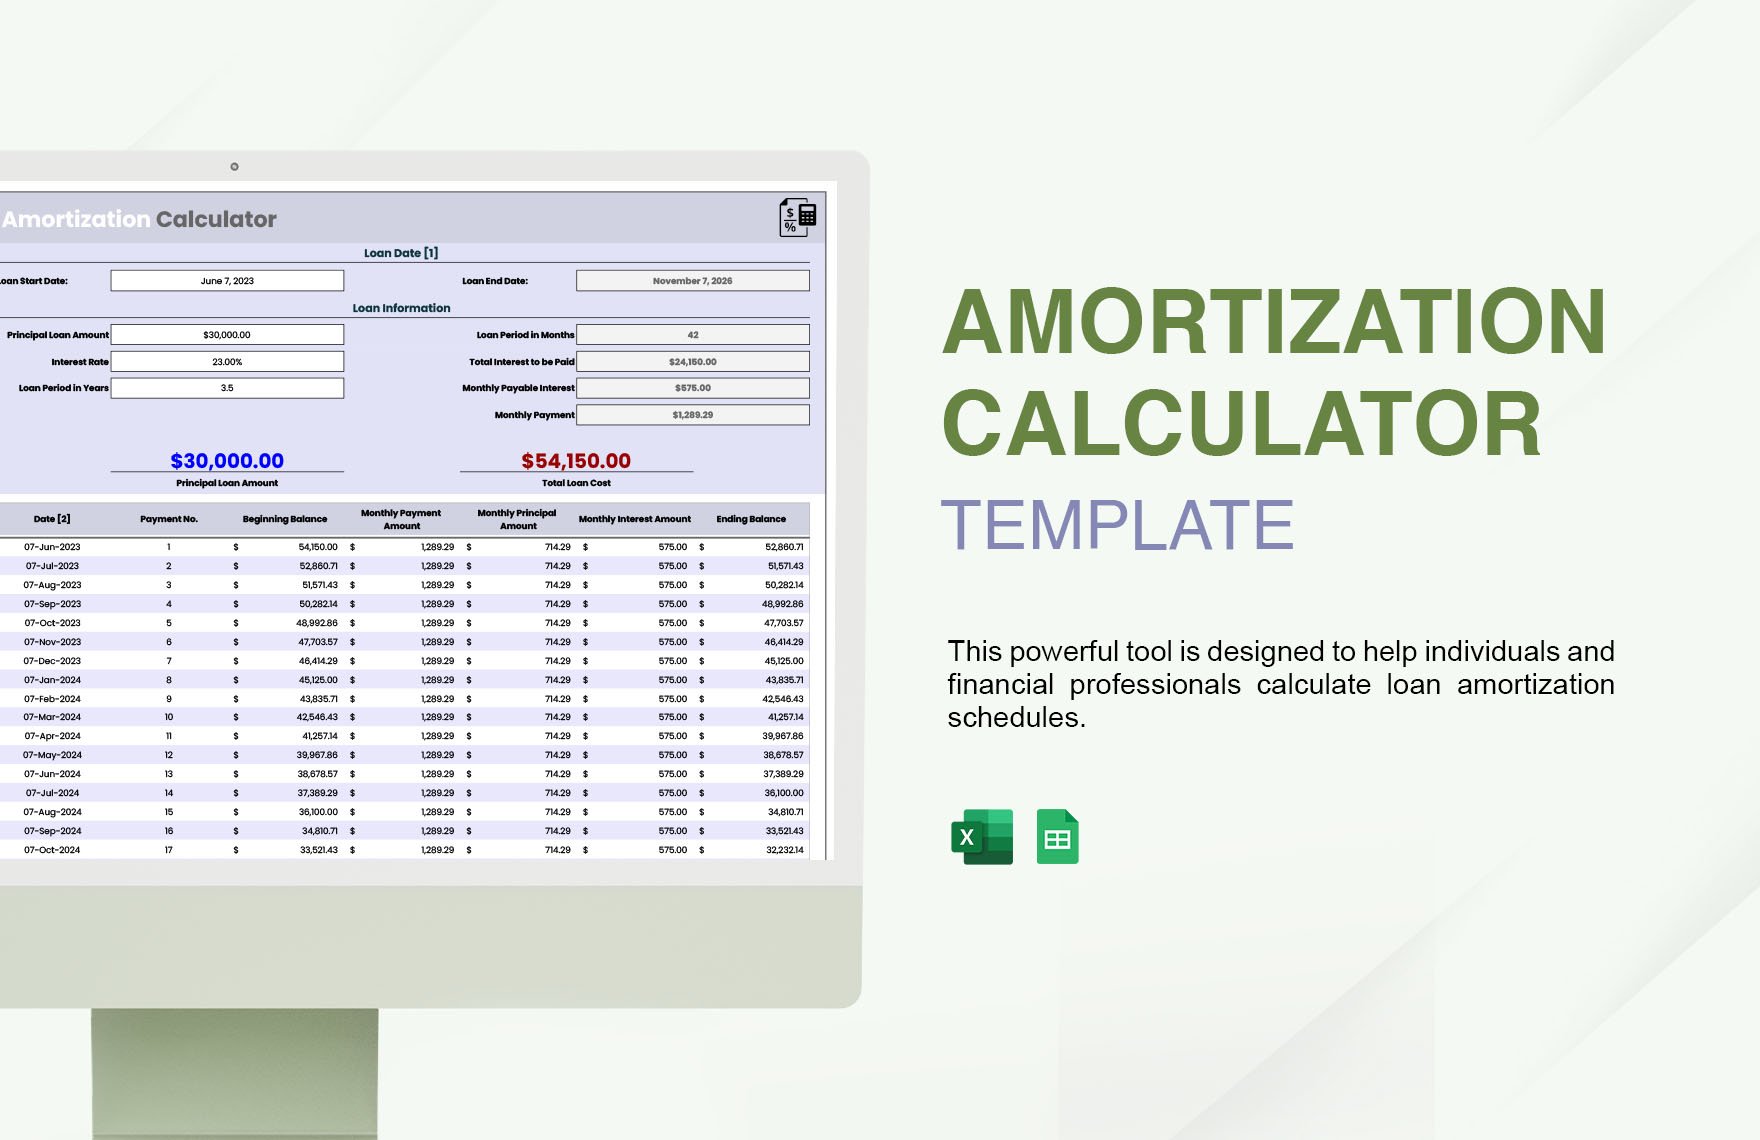 Amortization Calculator Template